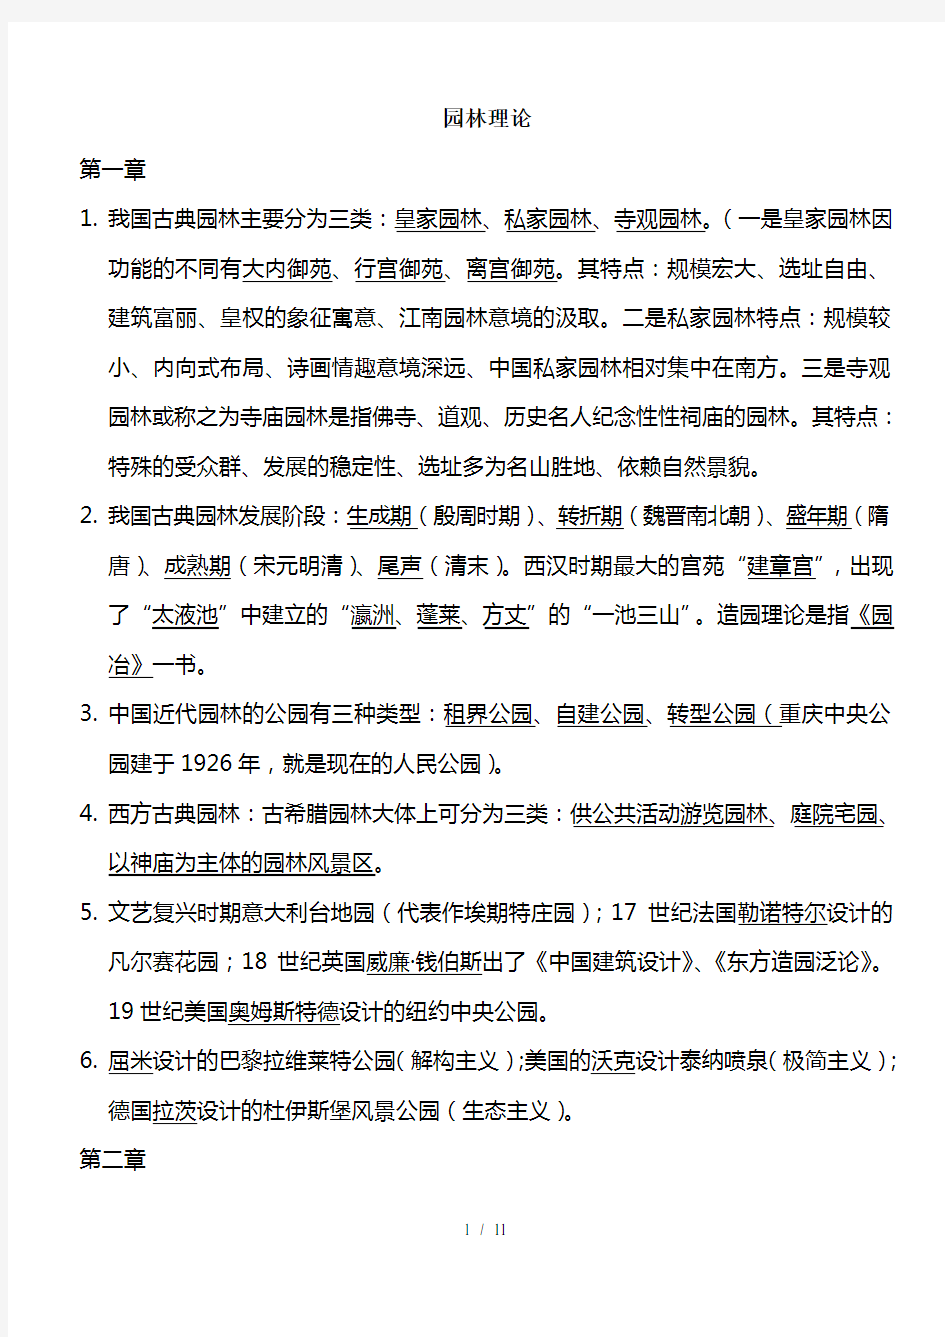 重庆市园林工程师中高级考试复习题园林理论